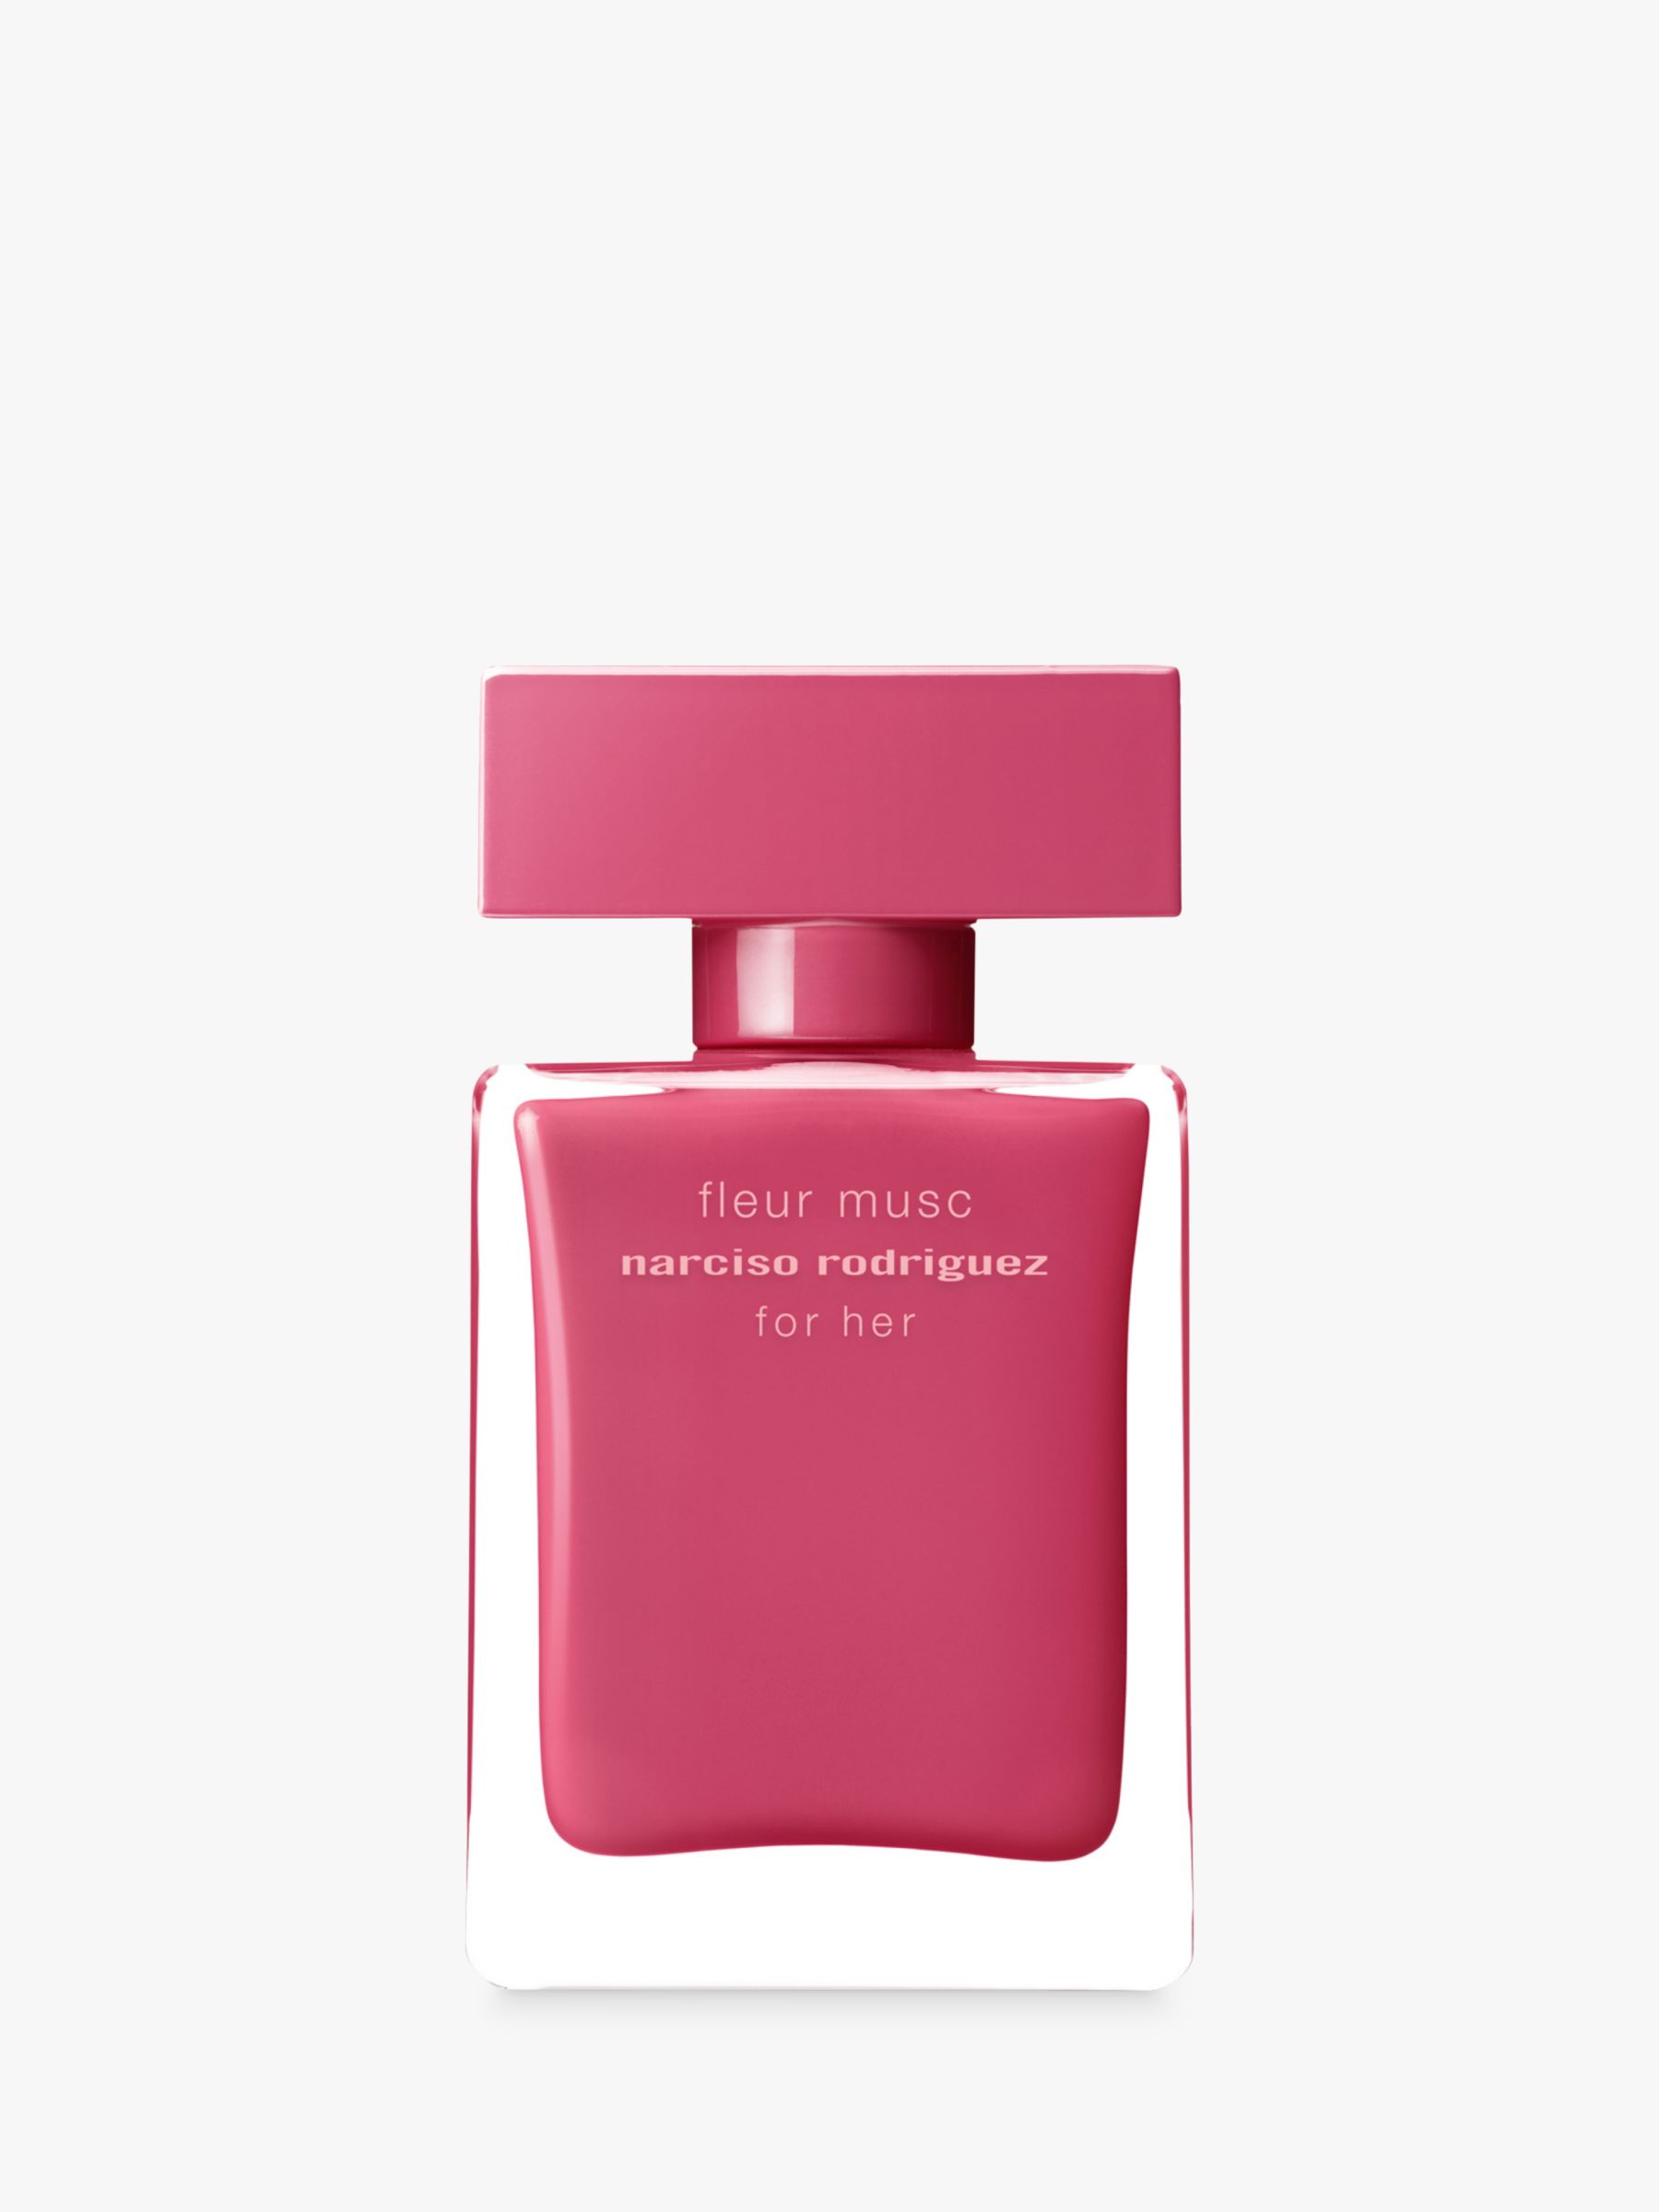 Narciso Rodriguez Fleur Musc for Her Eau de Parfum at John Lewis & Partners